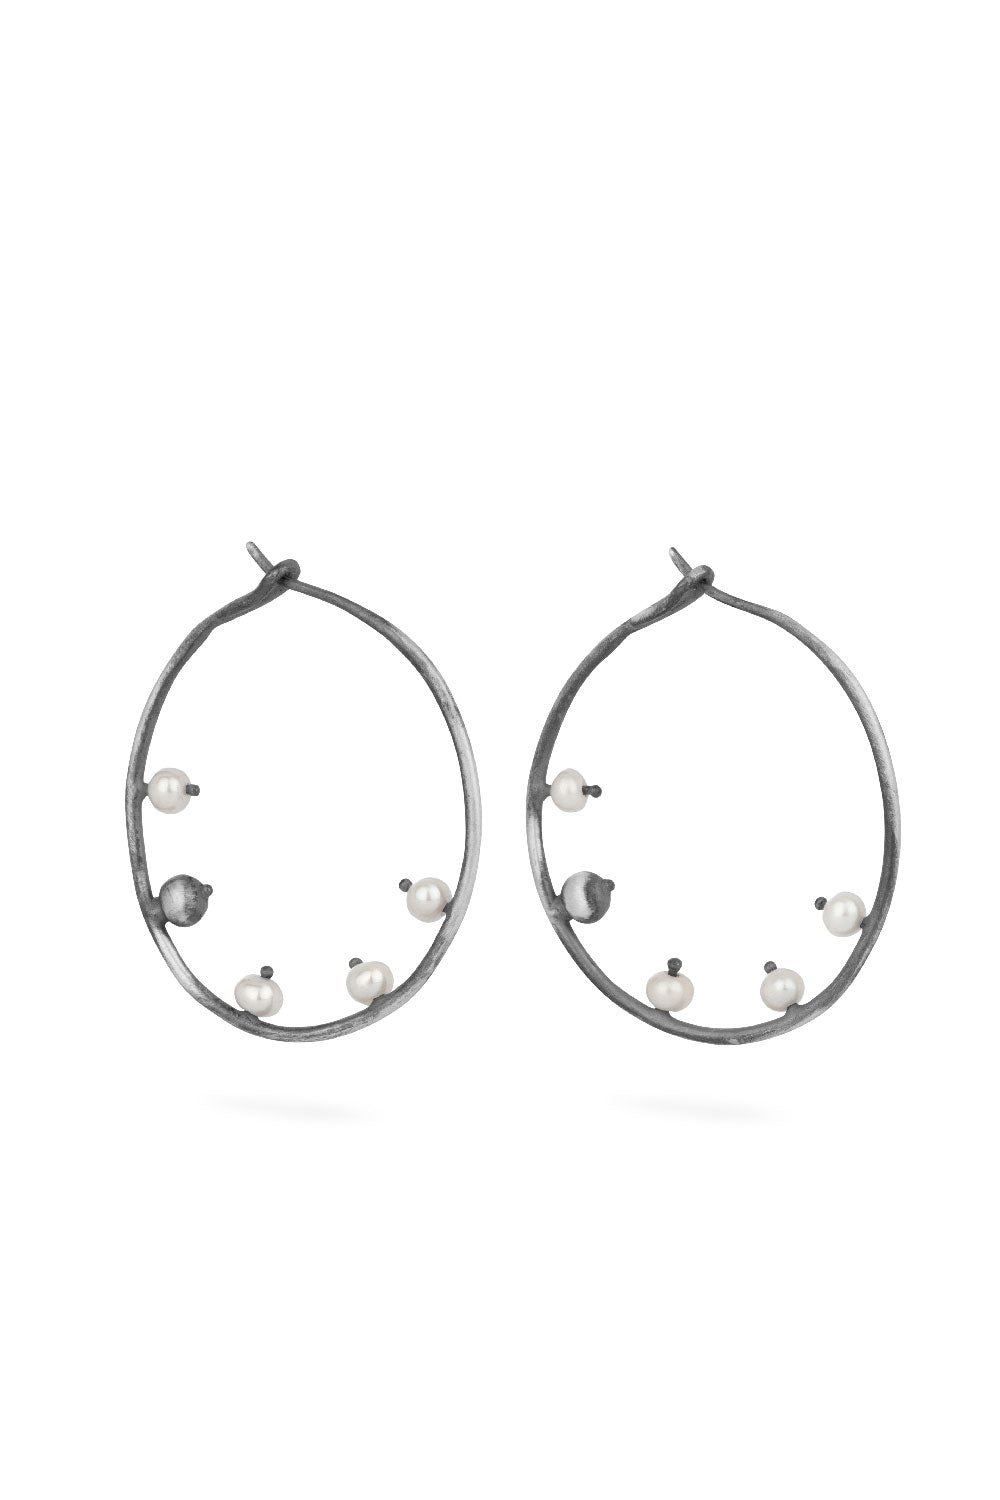 Sea earrings - big silver hoops with pearls